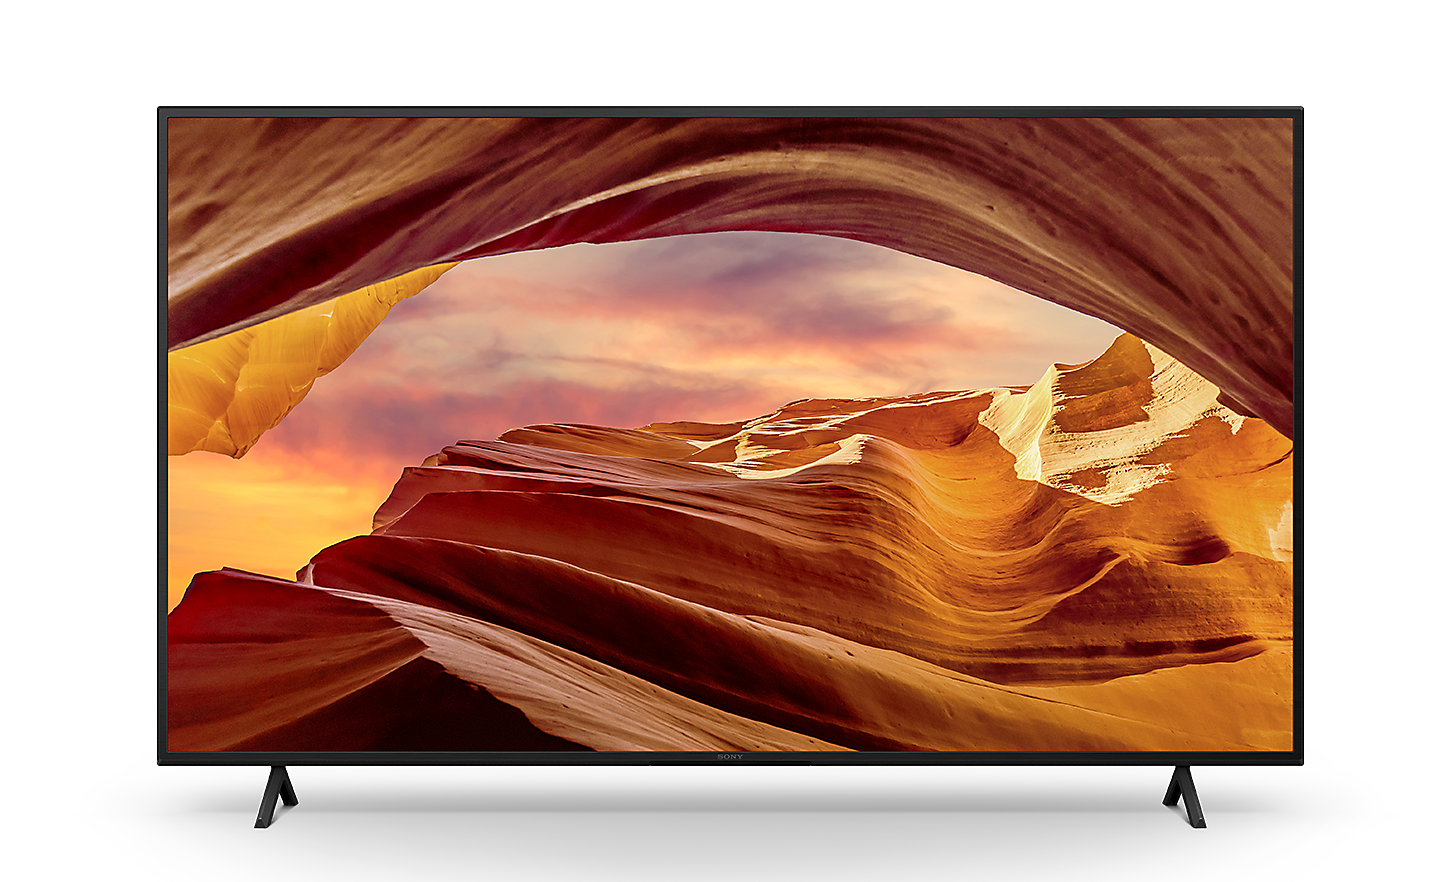 Pohľad spredu na televízor X75WL Series BRAVIA na podstavci s krásnou skalnatou krajinou na obrazovke